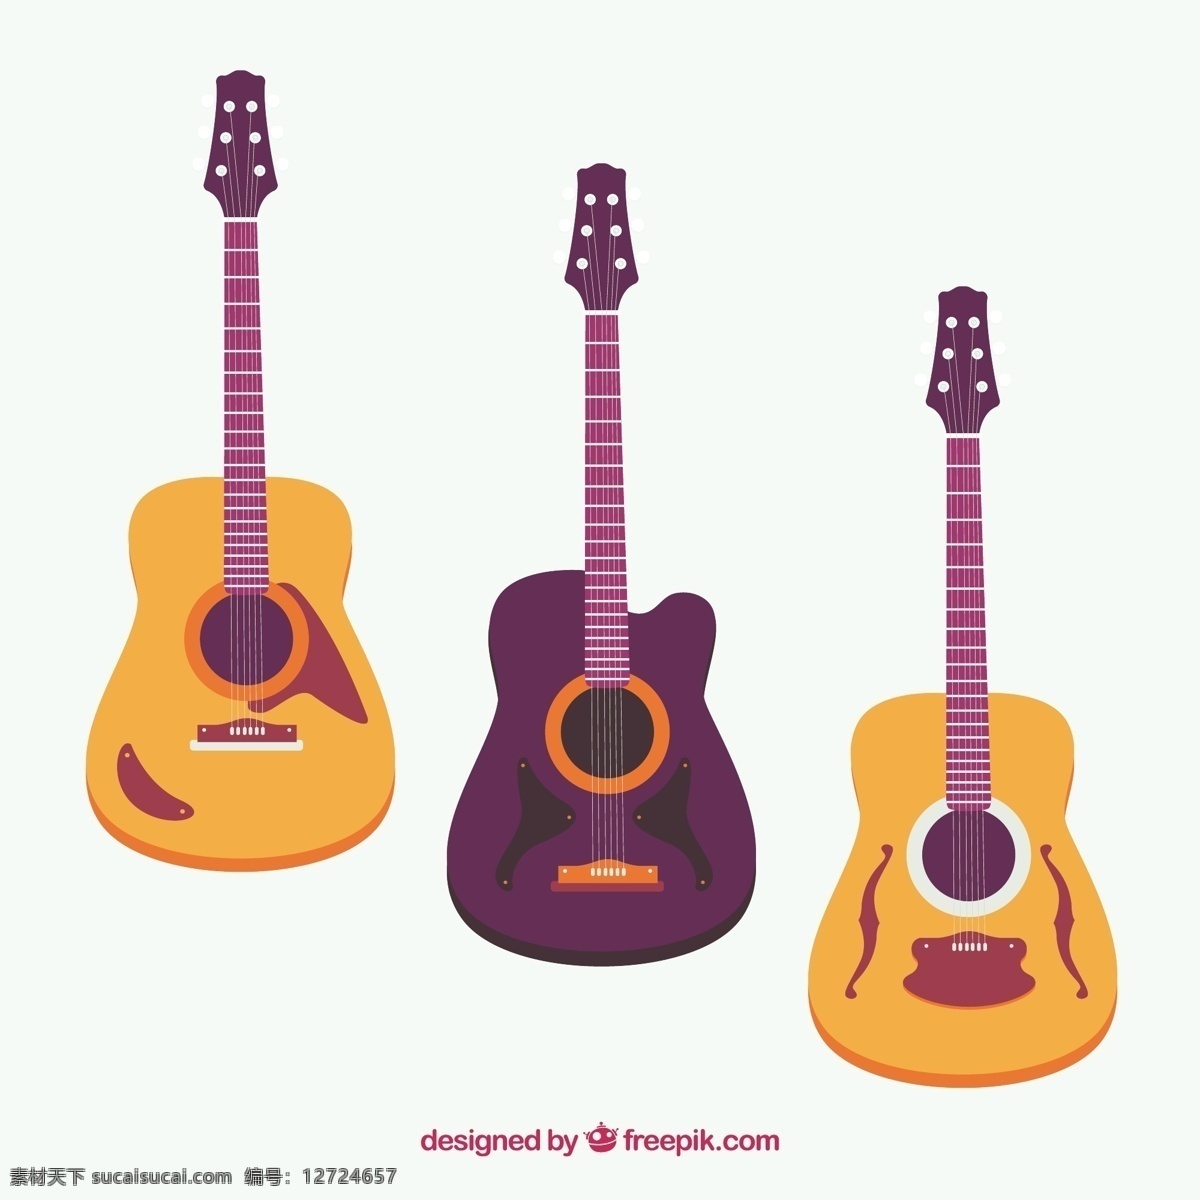 各种吉他 音乐 色彩 吉他 平板 平面设计 声音 音乐会 演奏 乐器 歌曲 设备 旋律 声学 各种